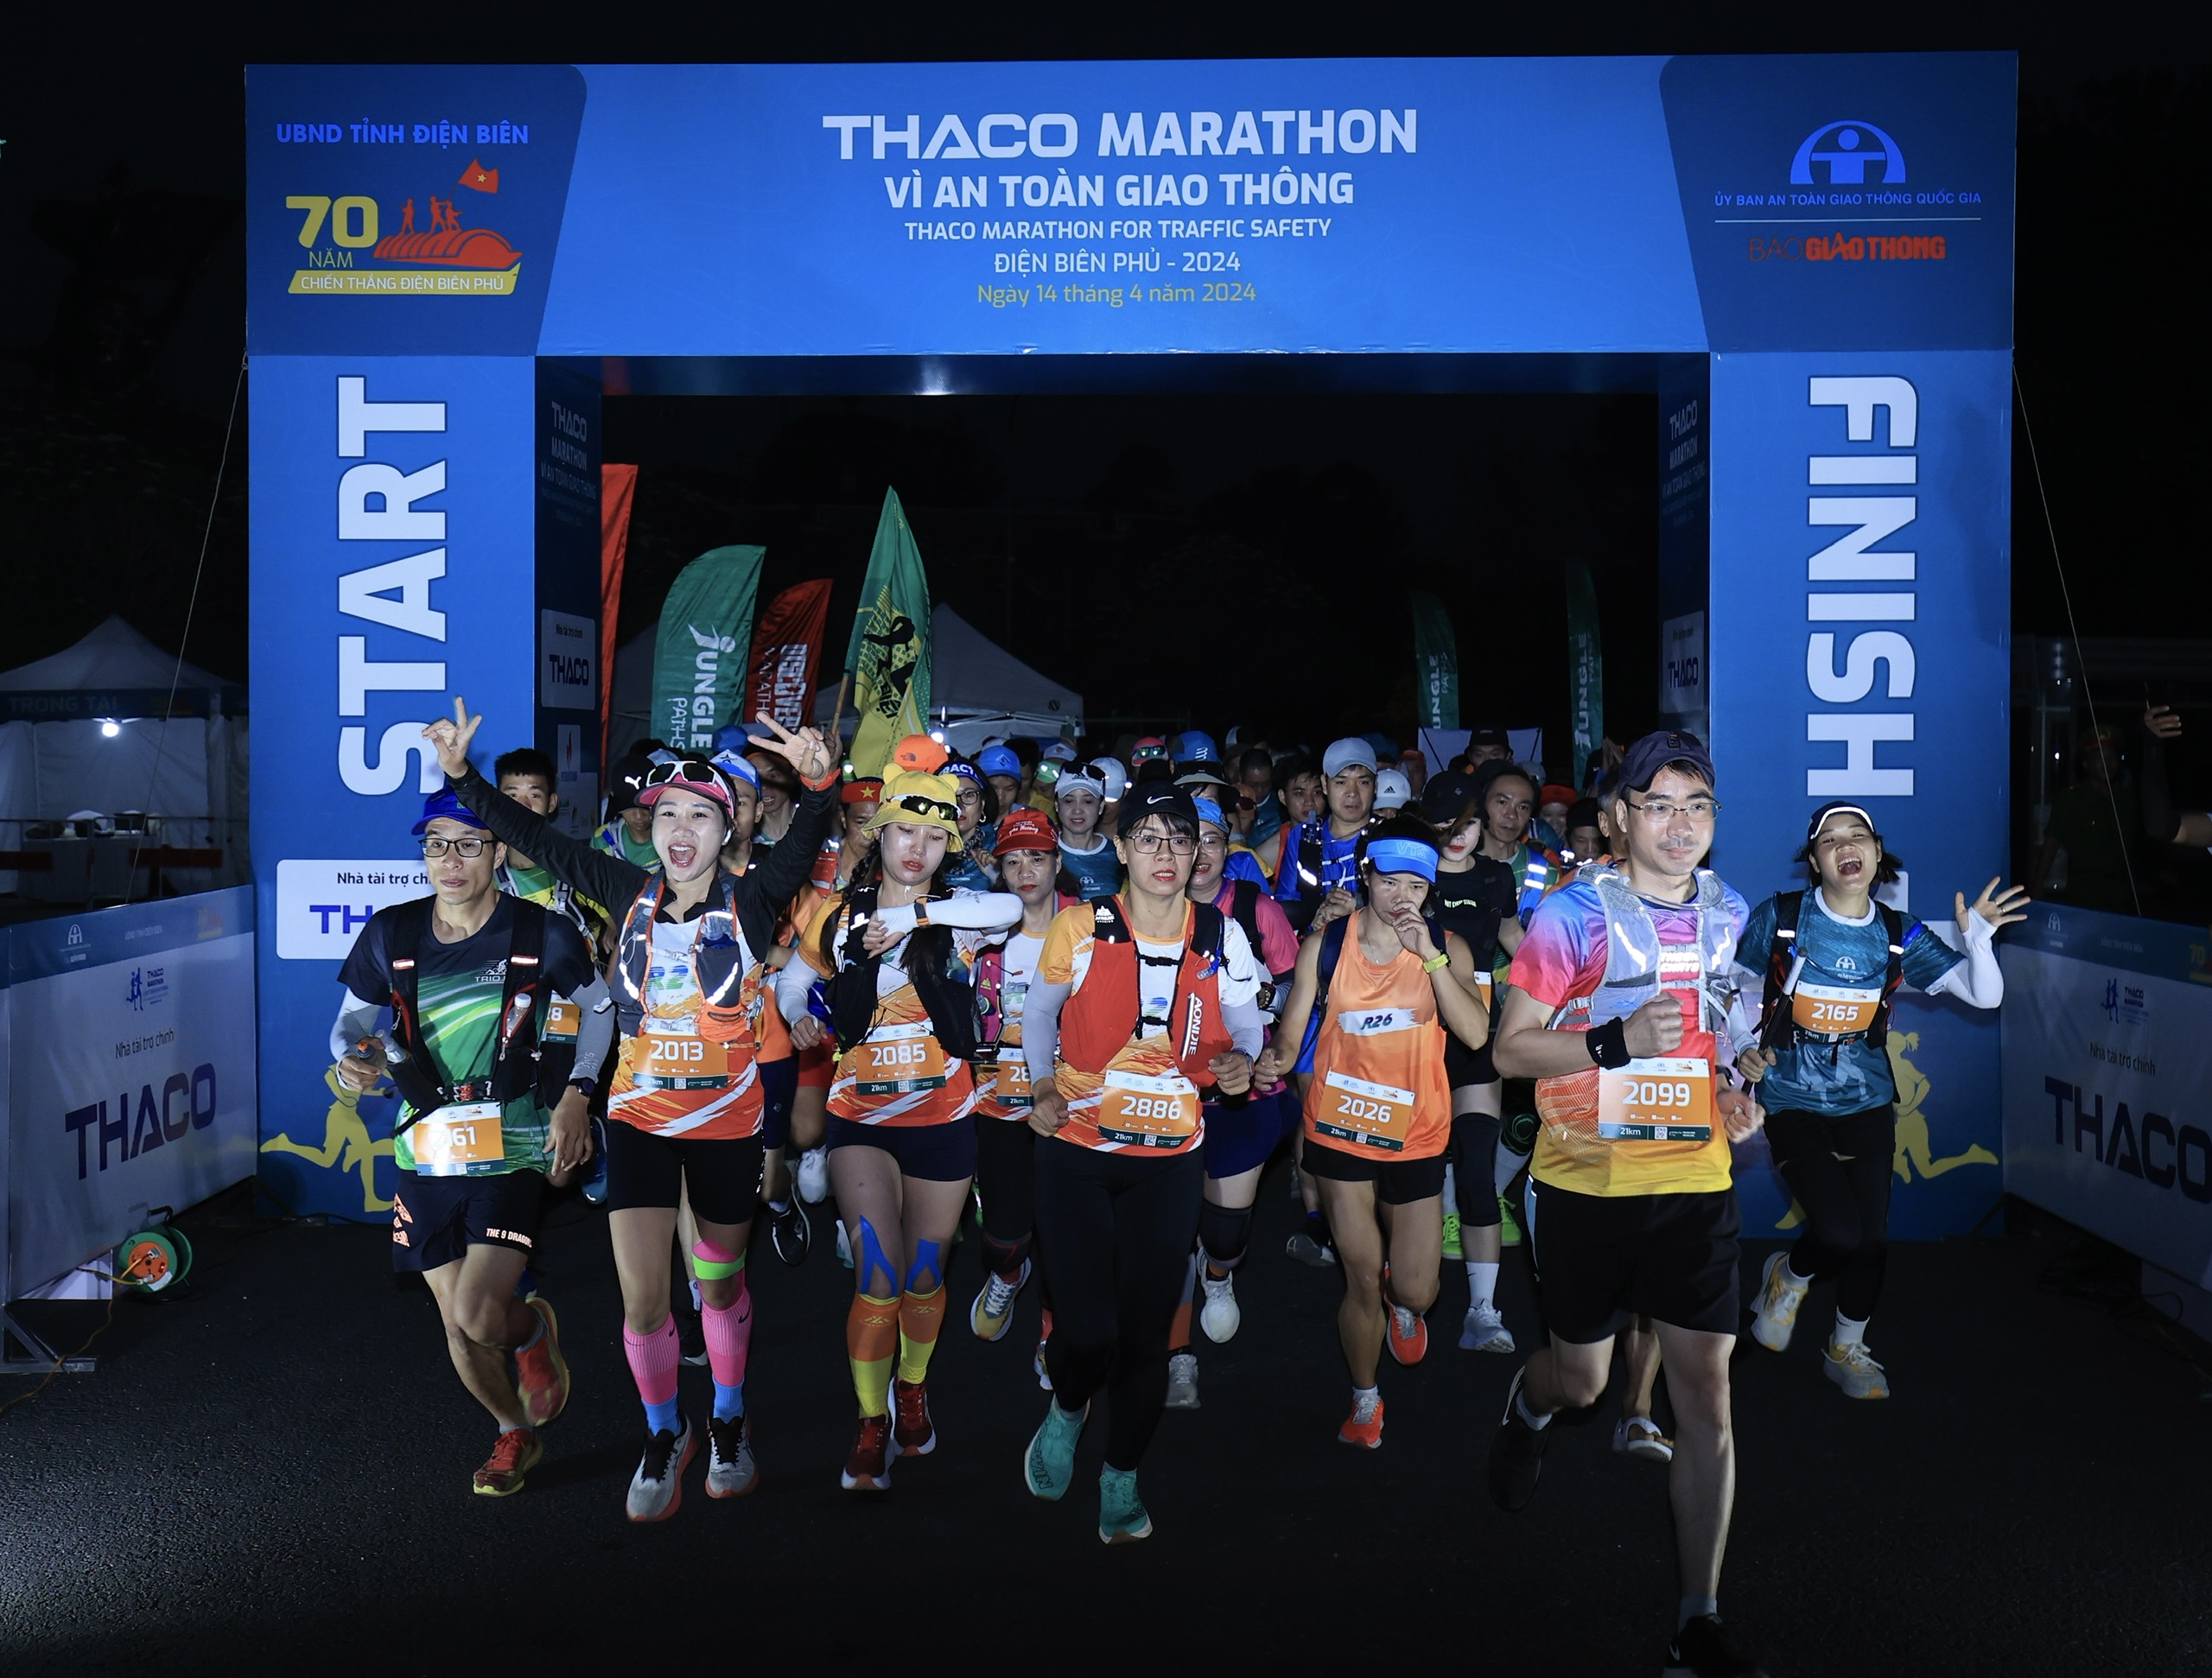 Trực tiếp: Giải THACO Marathon vì ATGT - Điện Biên Phủ 2024 thành công rực rỡ- Ảnh 40.